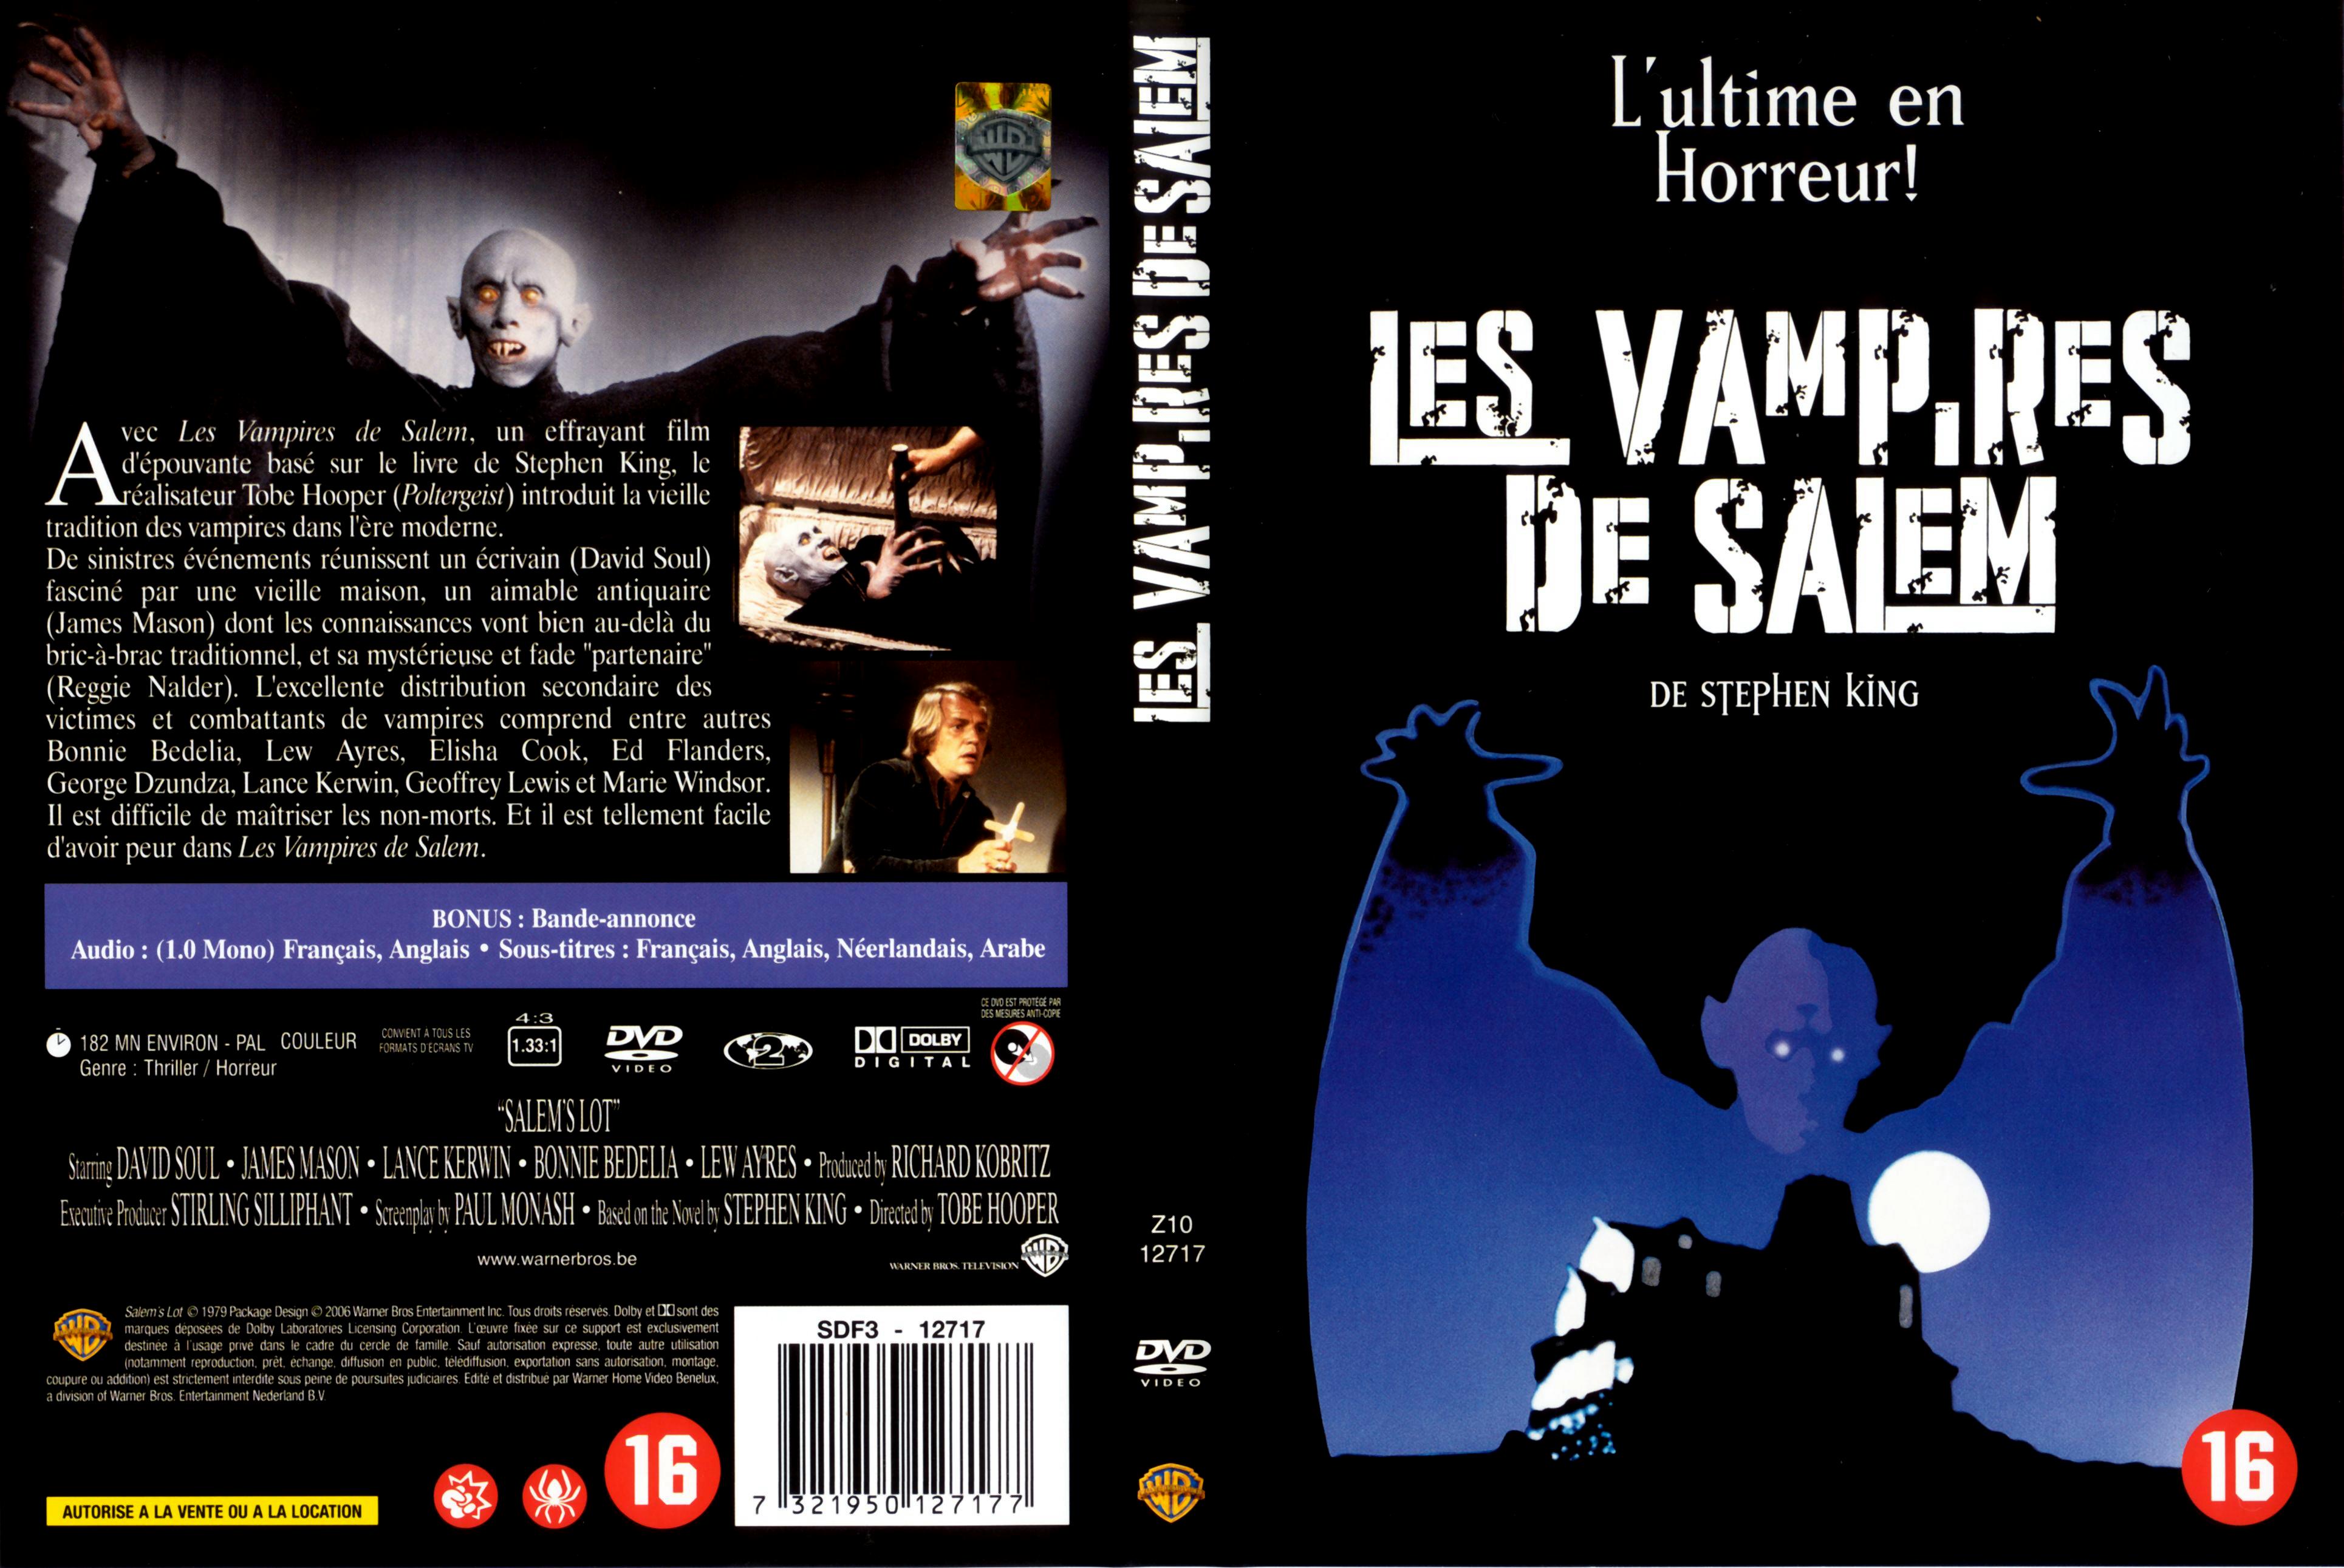 Jaquette DVD Les vampires de salem (1980) v2